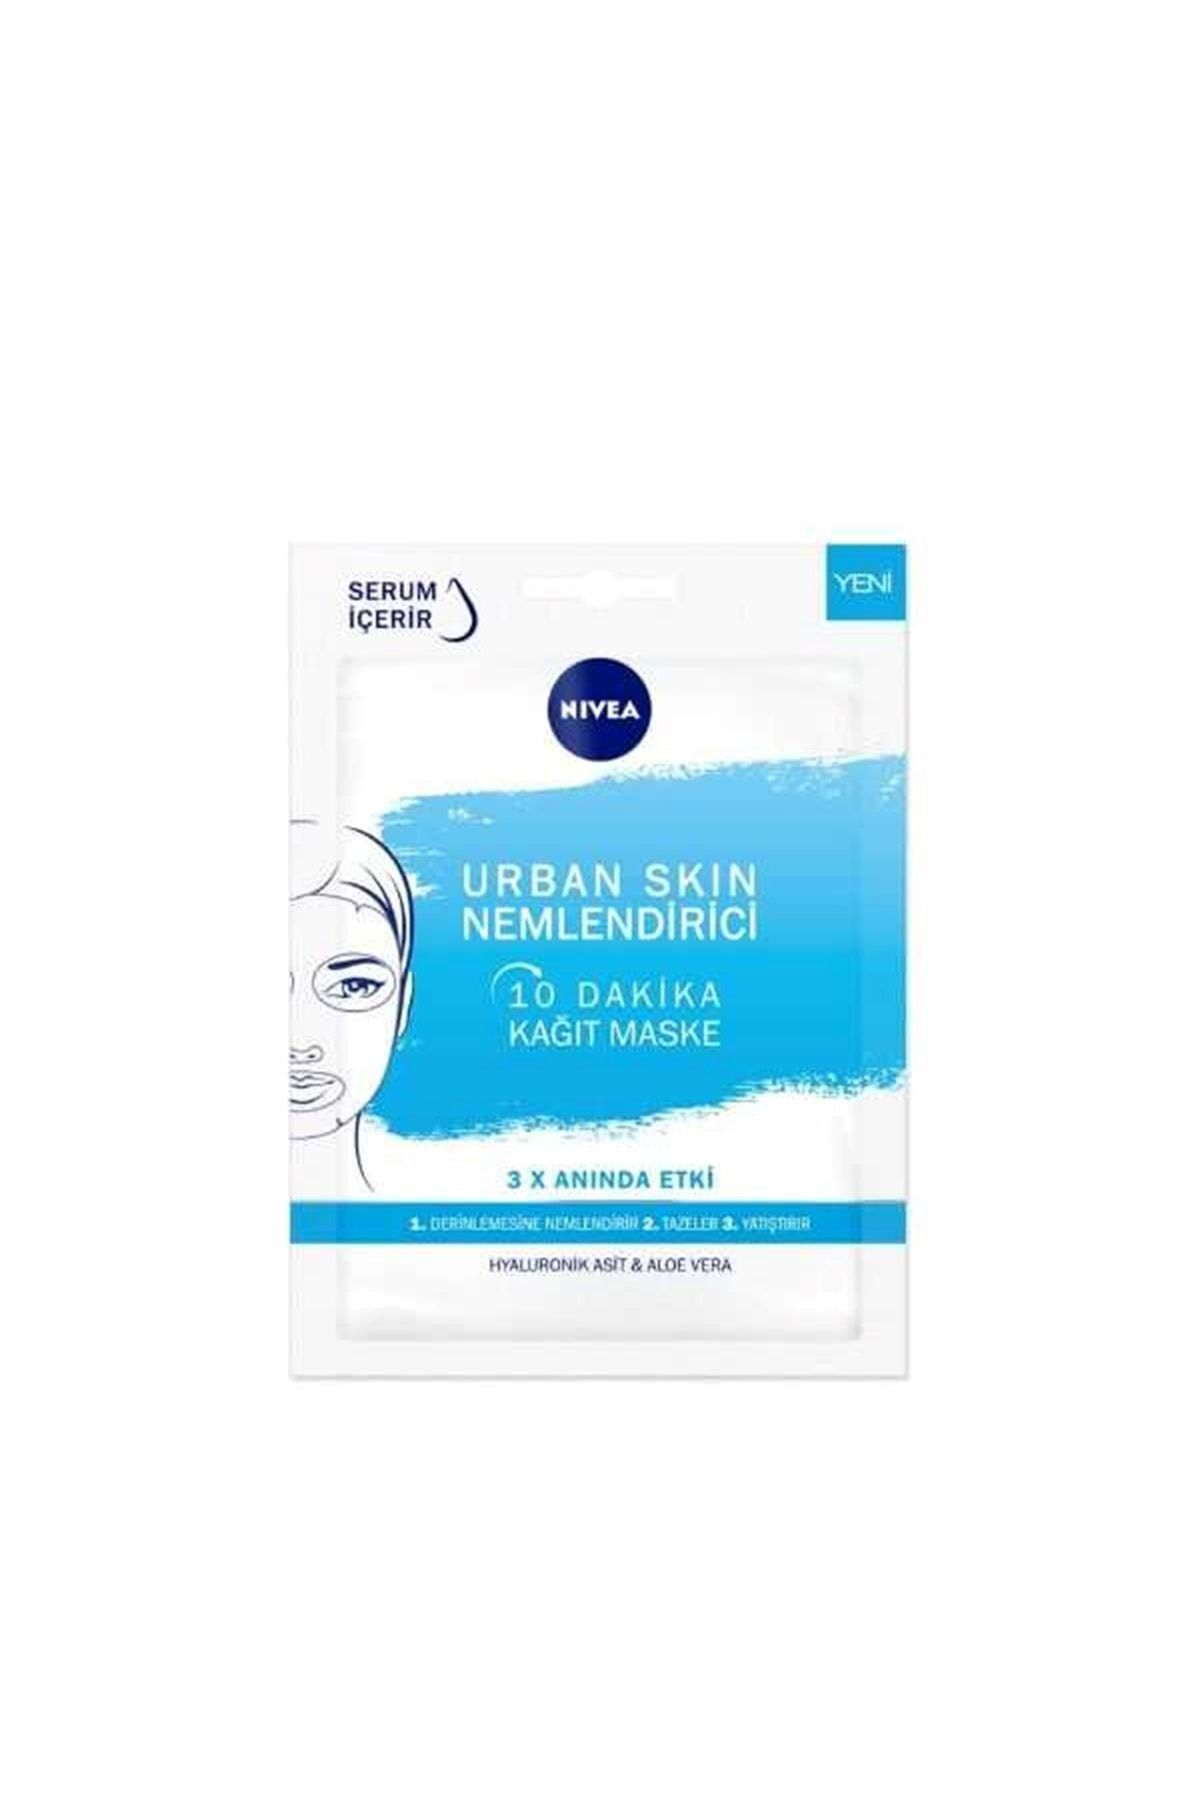 NIVEA Urban Skin Nemlendirici 10 Dakika Kağıt Maske